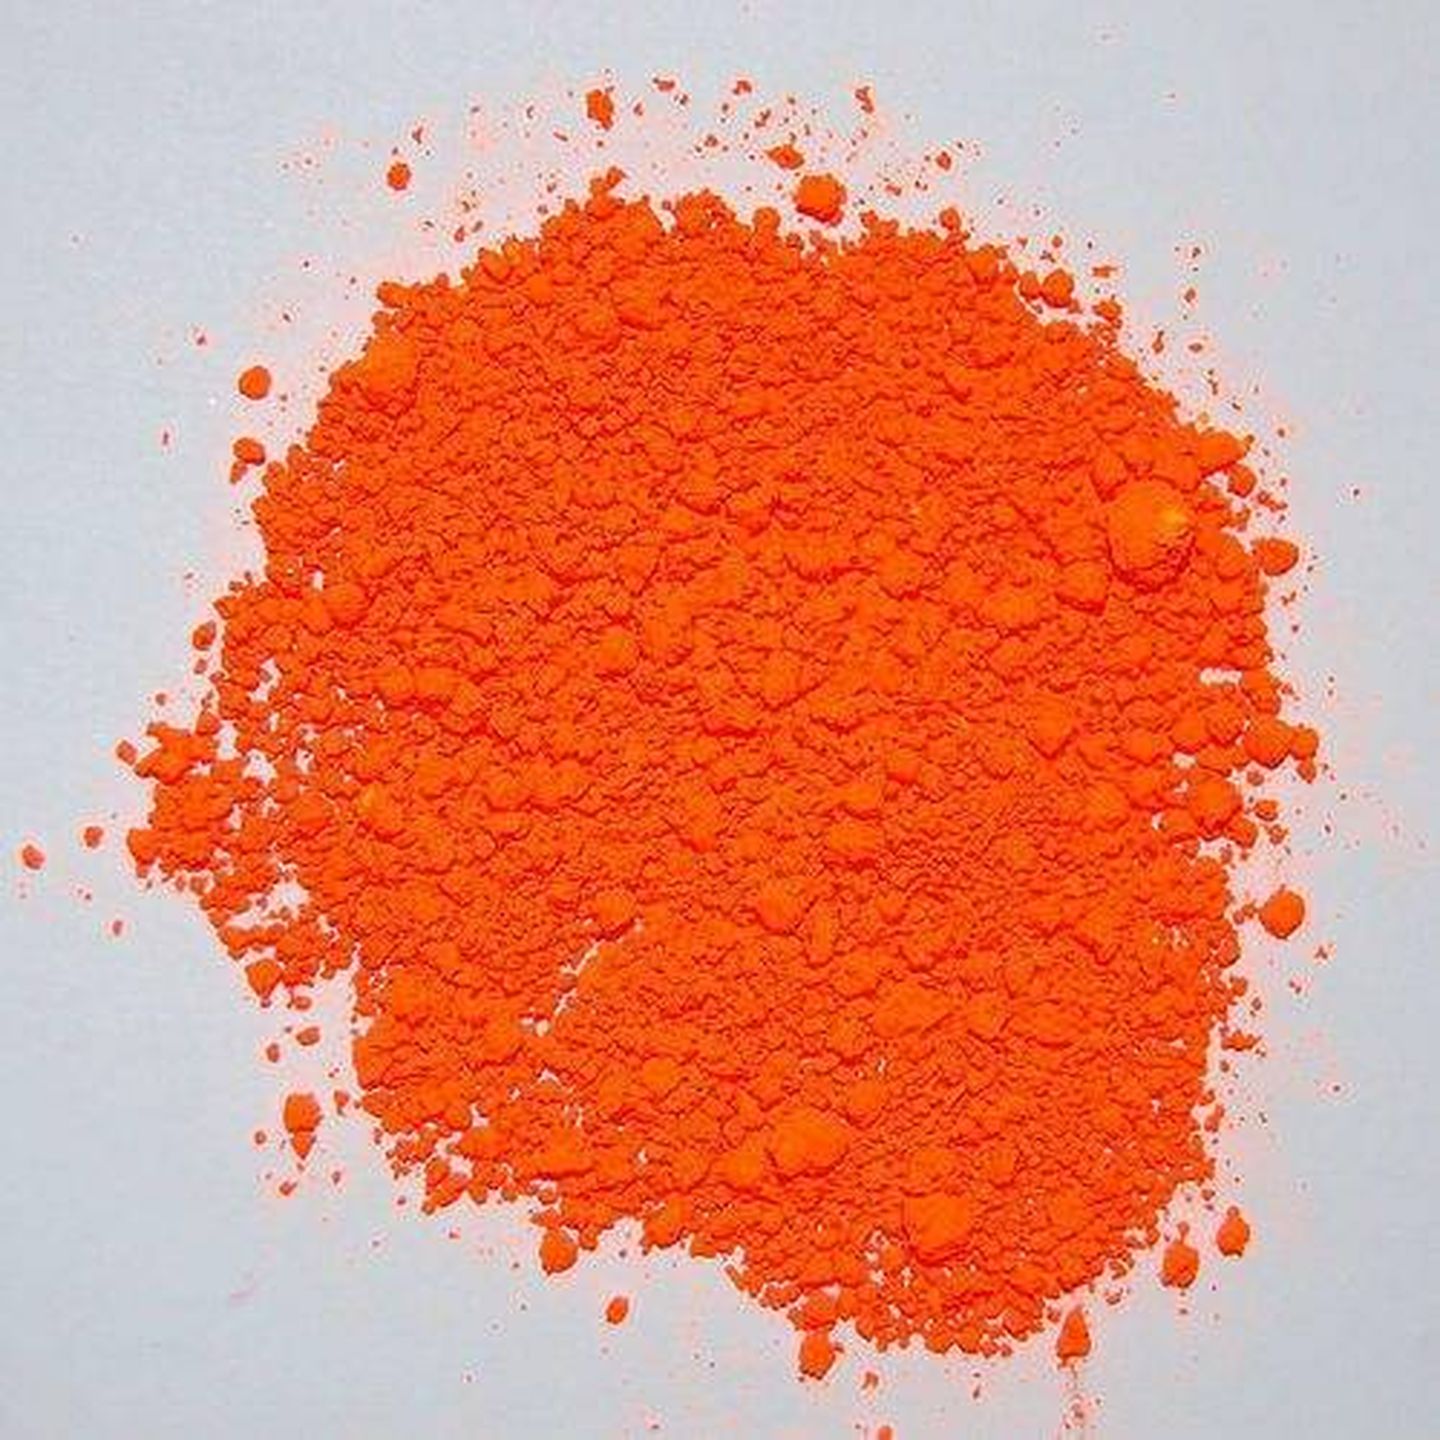 La tinta Lumogen-F Orange, un compuesto común que se puede comprar hasta en el AliExpress.